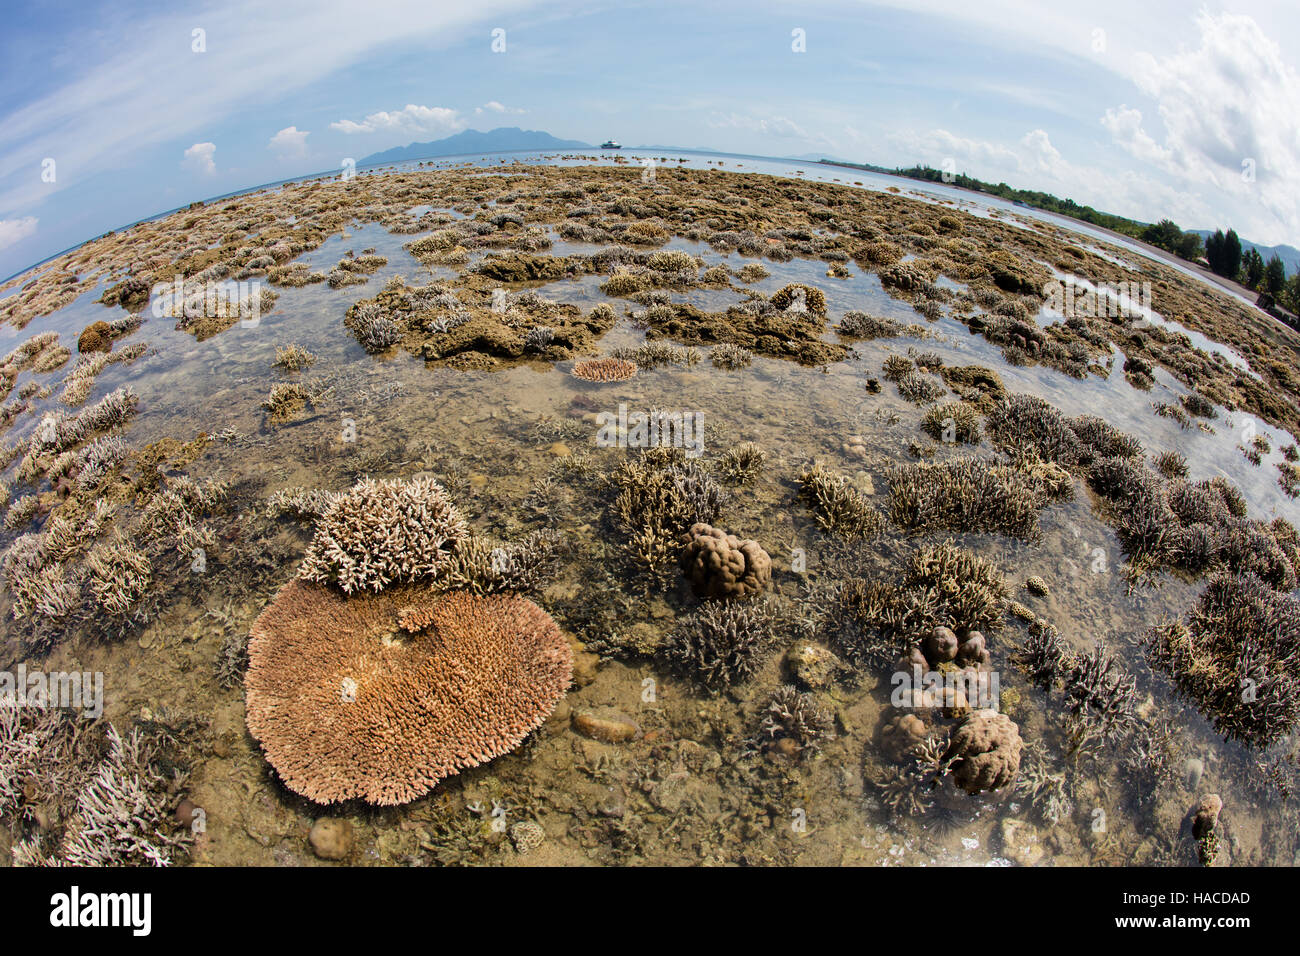 Una marea baja severa expone los corales formadores de arrecifes que crecen a lo largo del borde de Flores, en Indonesia. Foto de stock